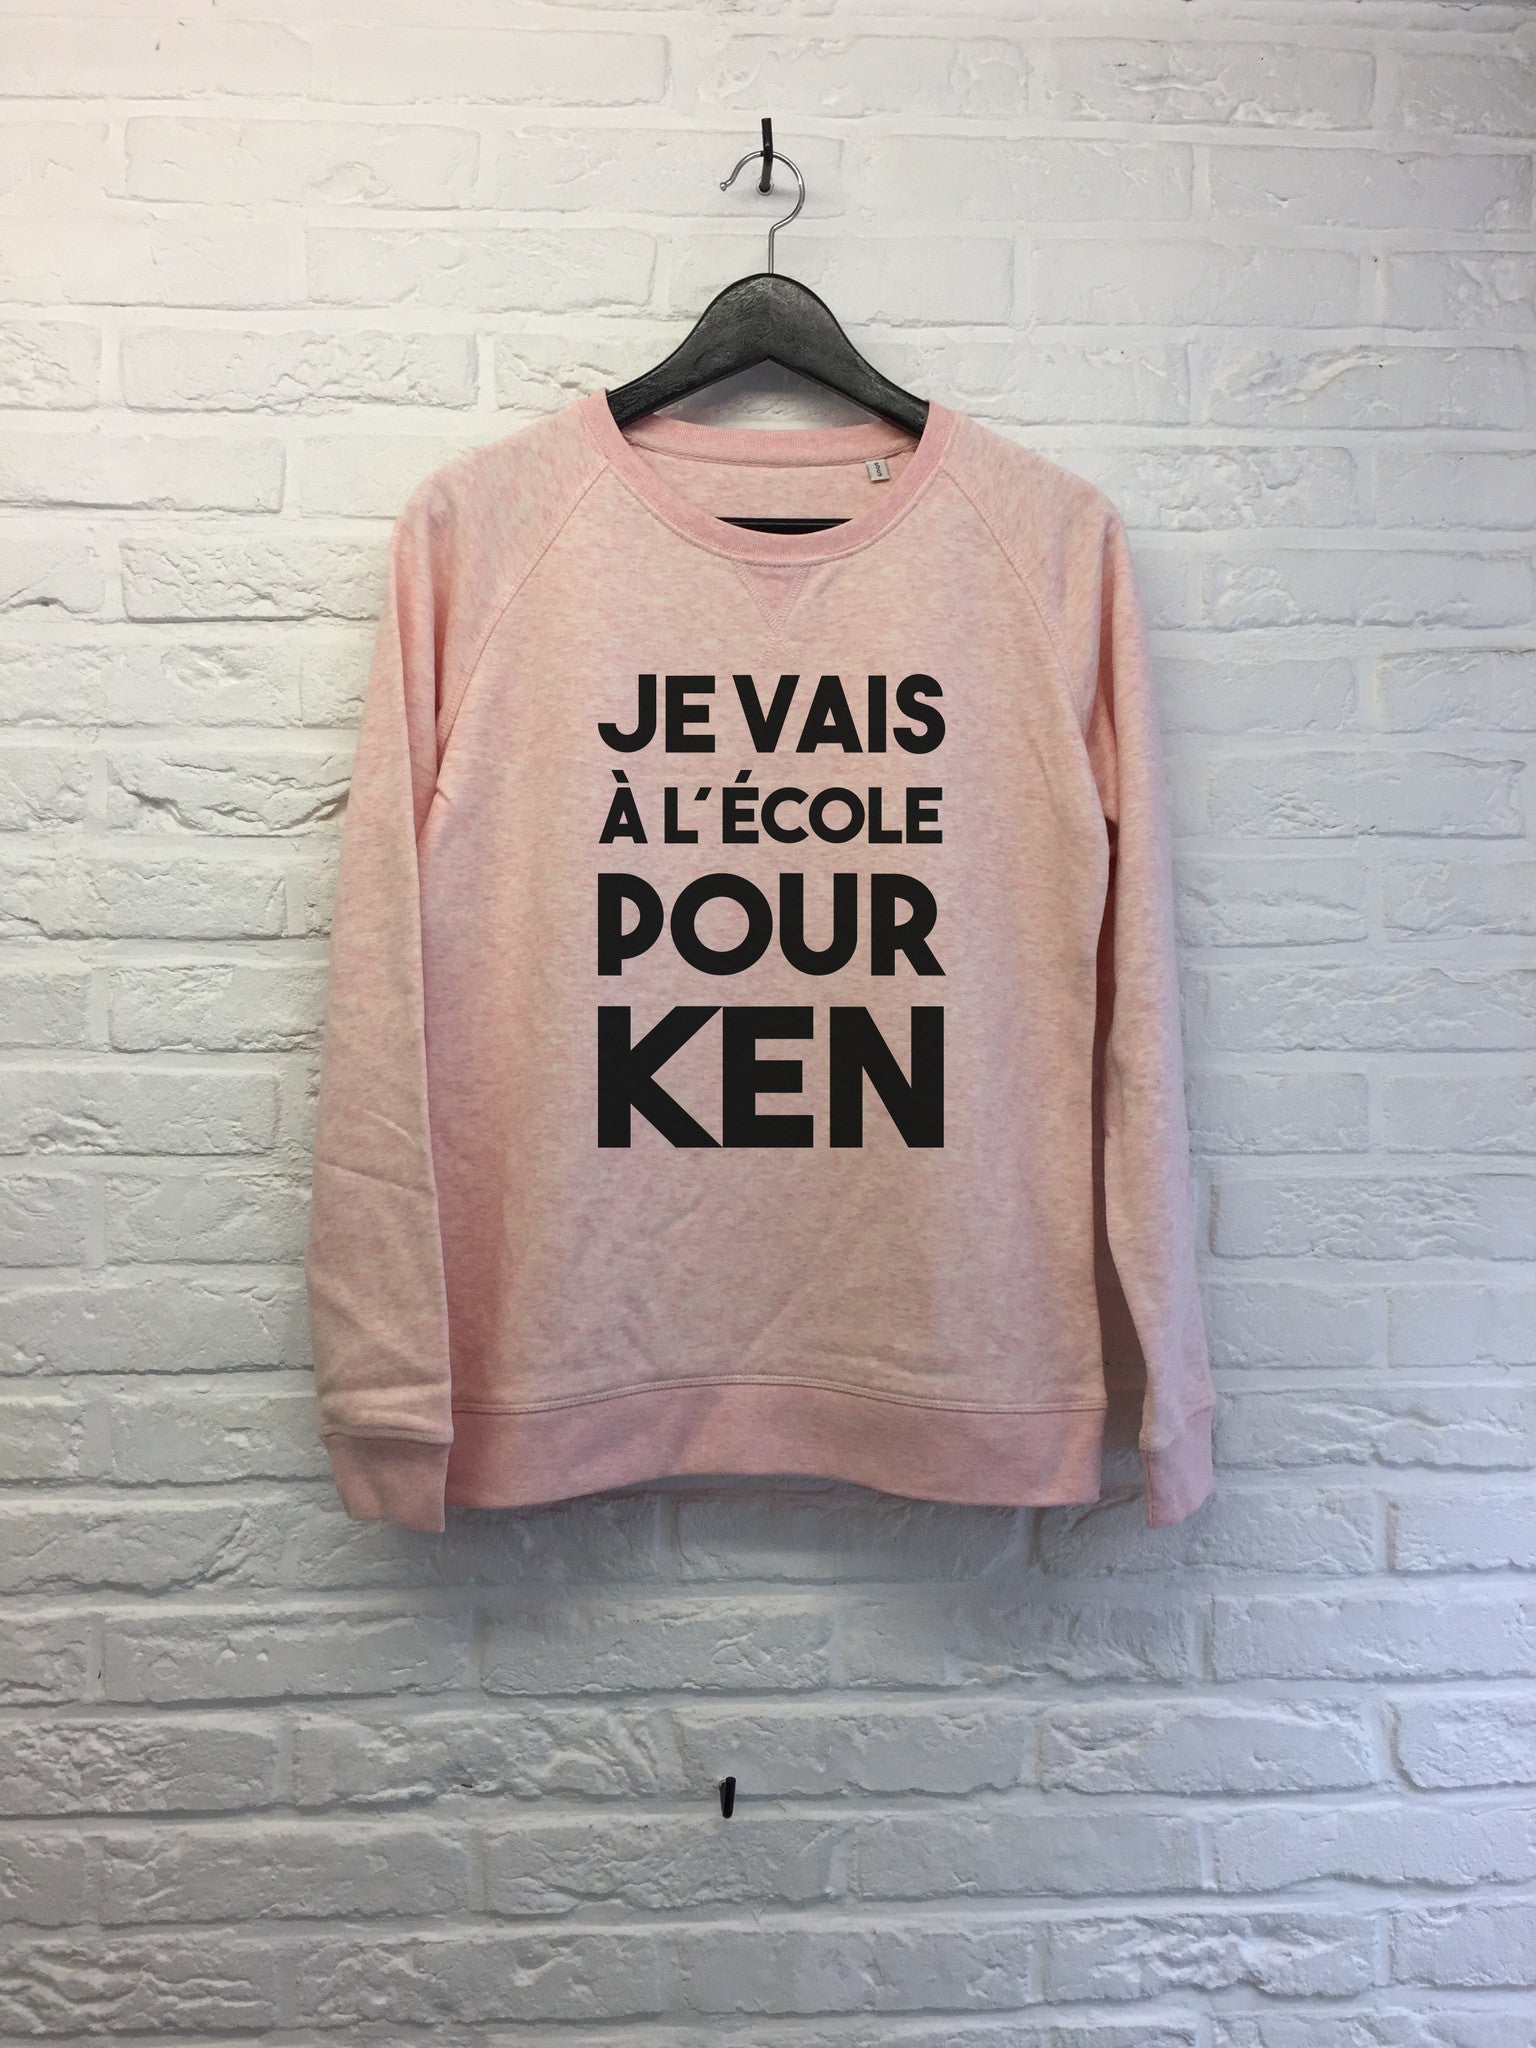 Je vais a l'ecole pour Ken- Sweat - Femme-Sweat shirts-Atelier Amelot